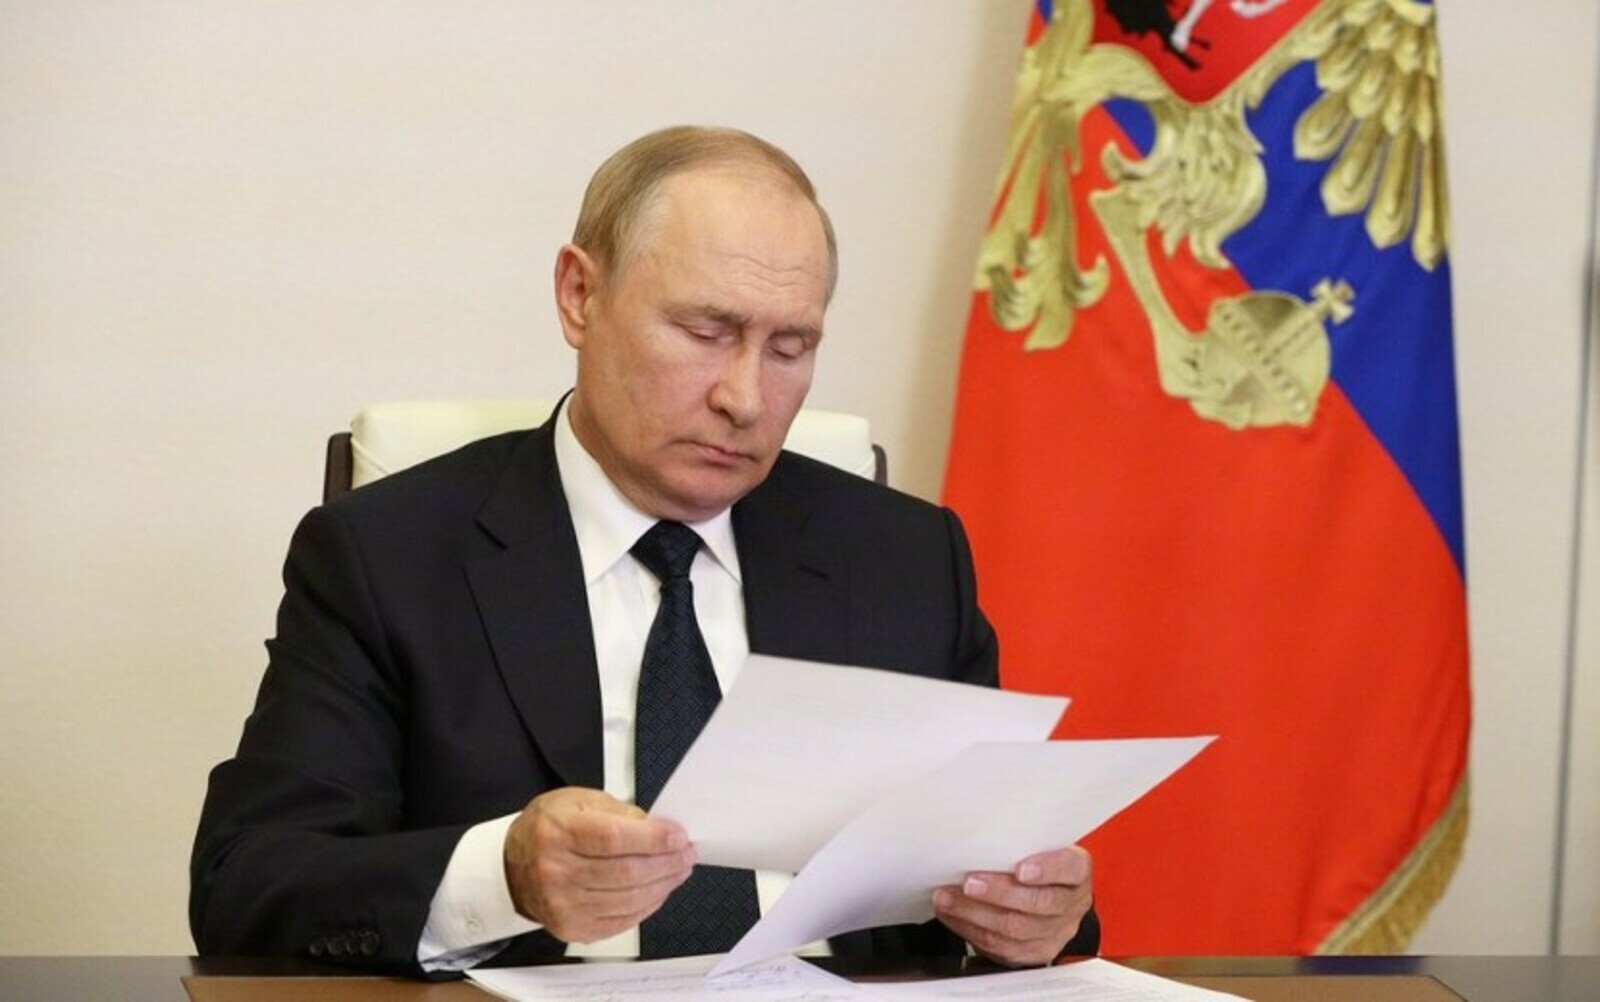 Путин Запорожьепе Херсон облаҫӗсен никама пӑхӑнманлӑхне йышӑннă